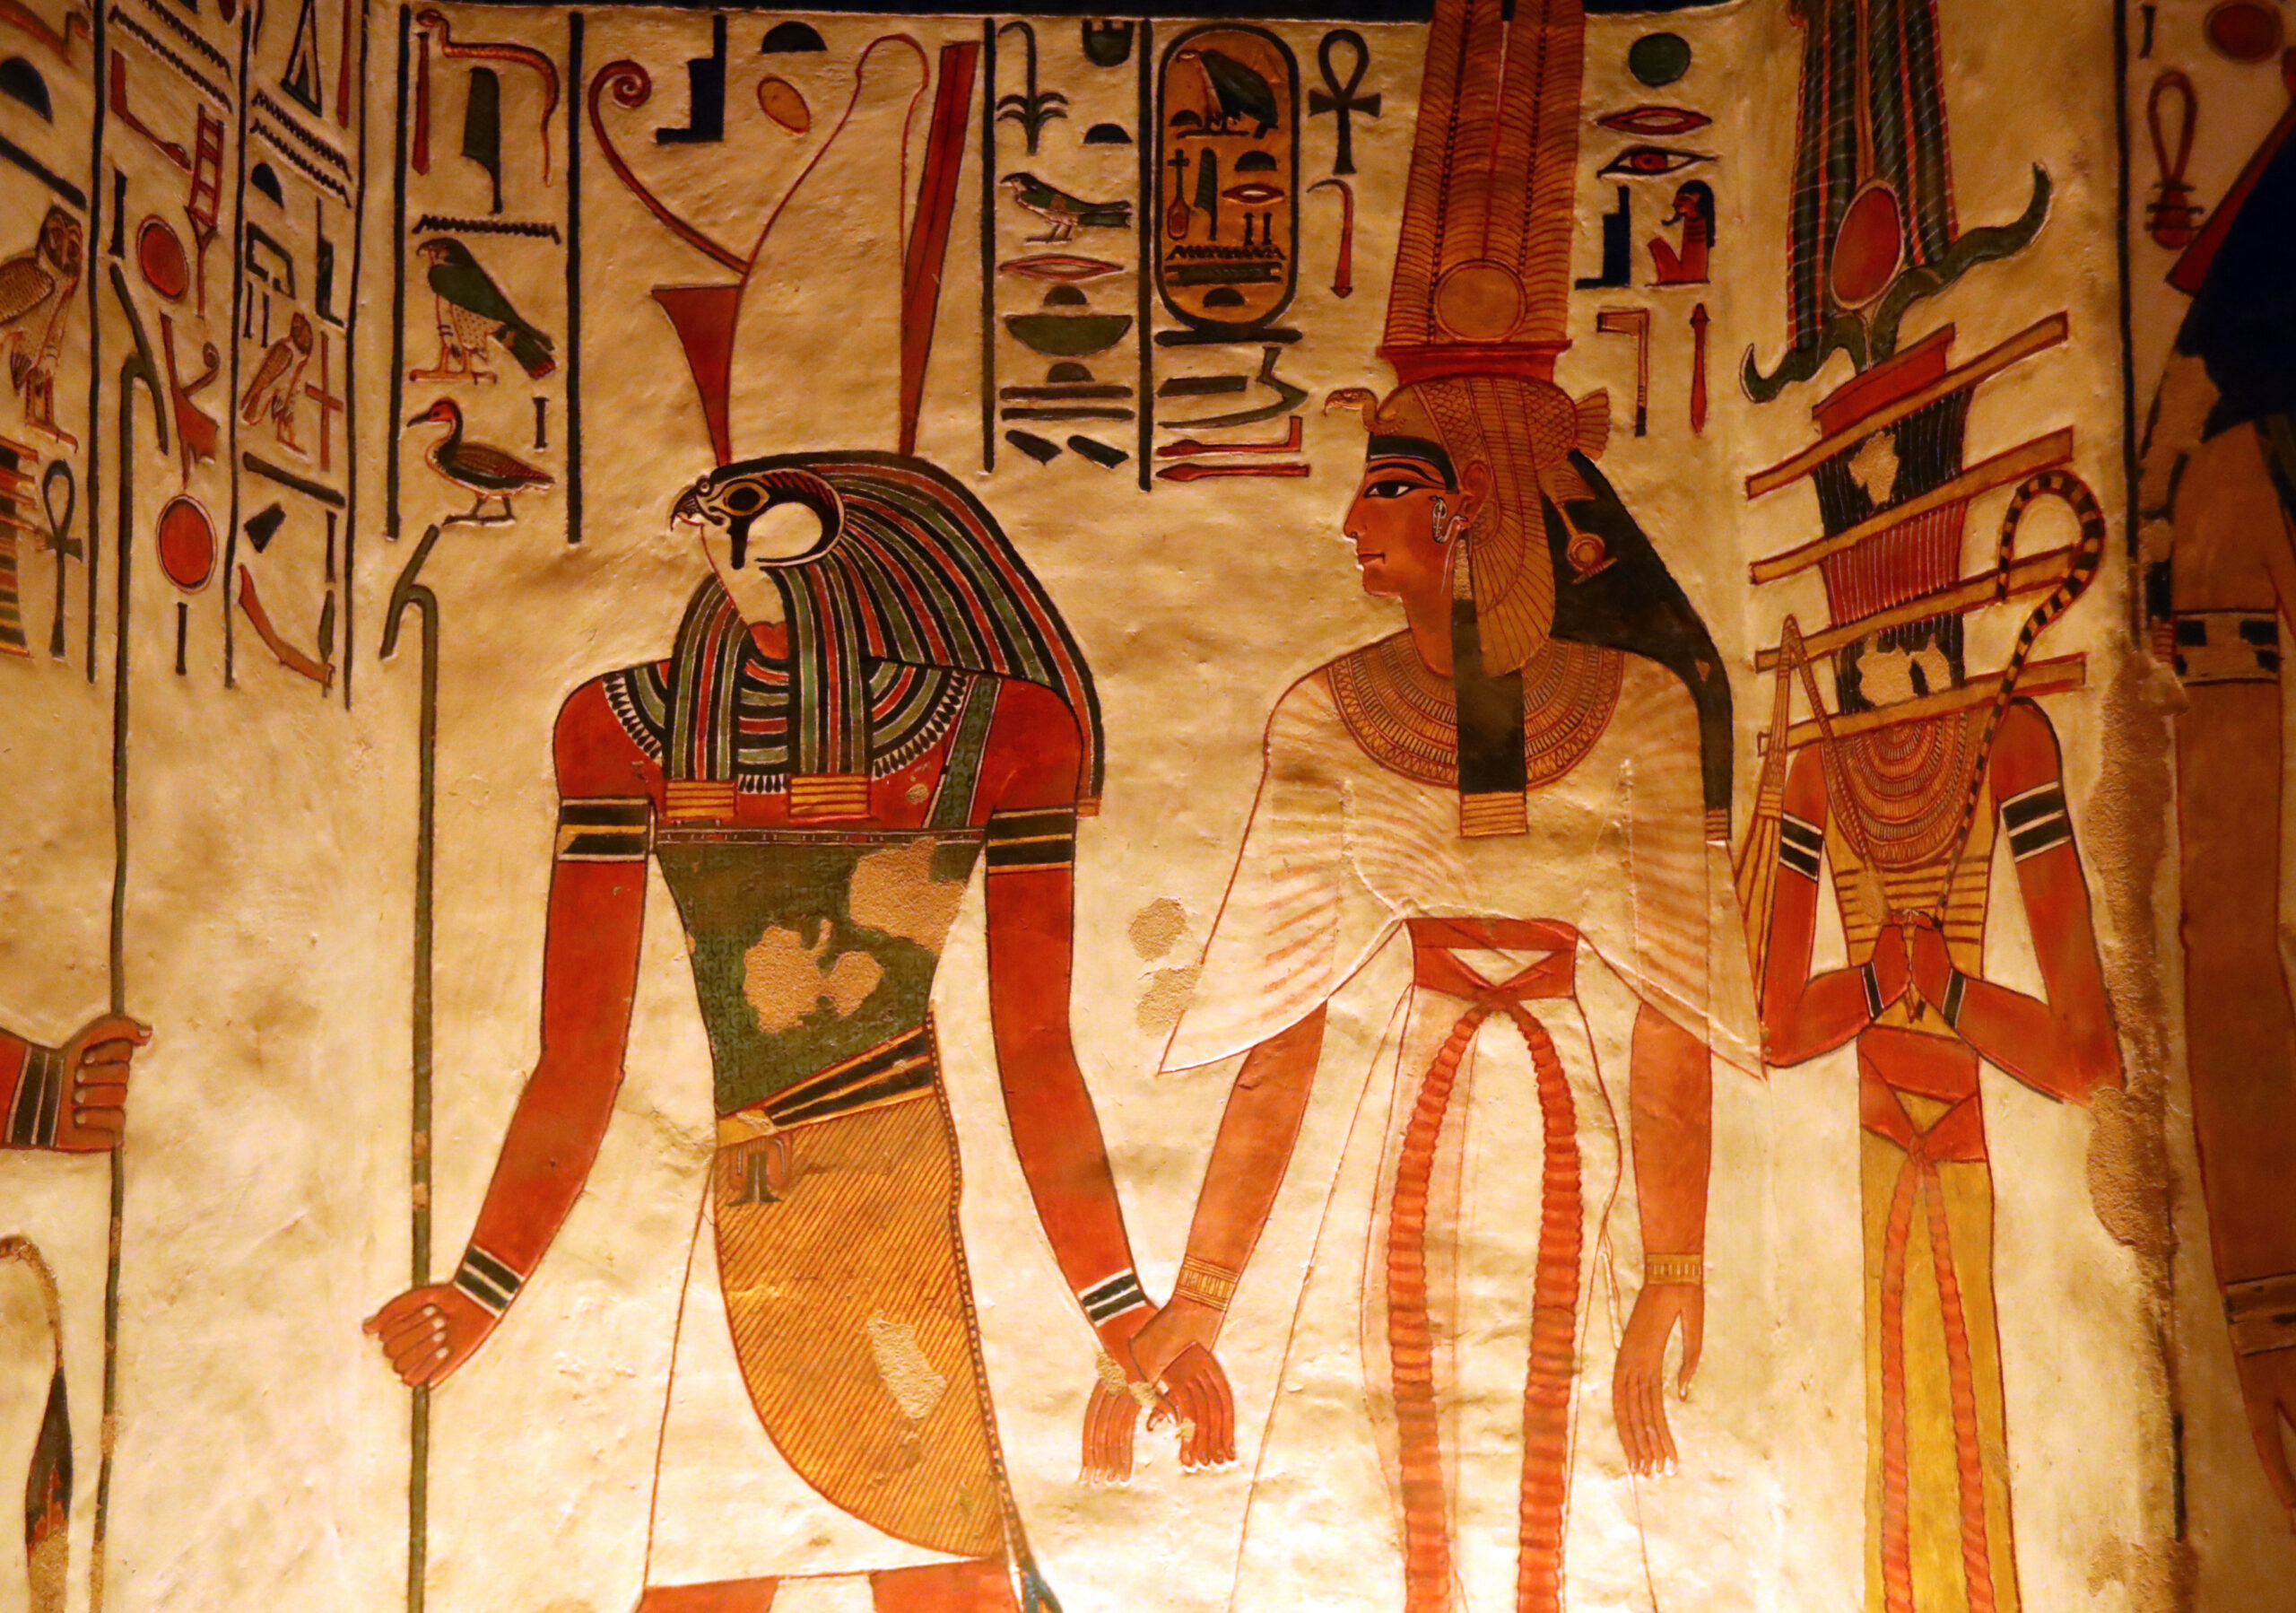 ยลจิตรกรรมฝาผนังเลื่องชื่อใน 'สุสานราชินีเนเฟอร์ตารี' แห่งอียิปต์